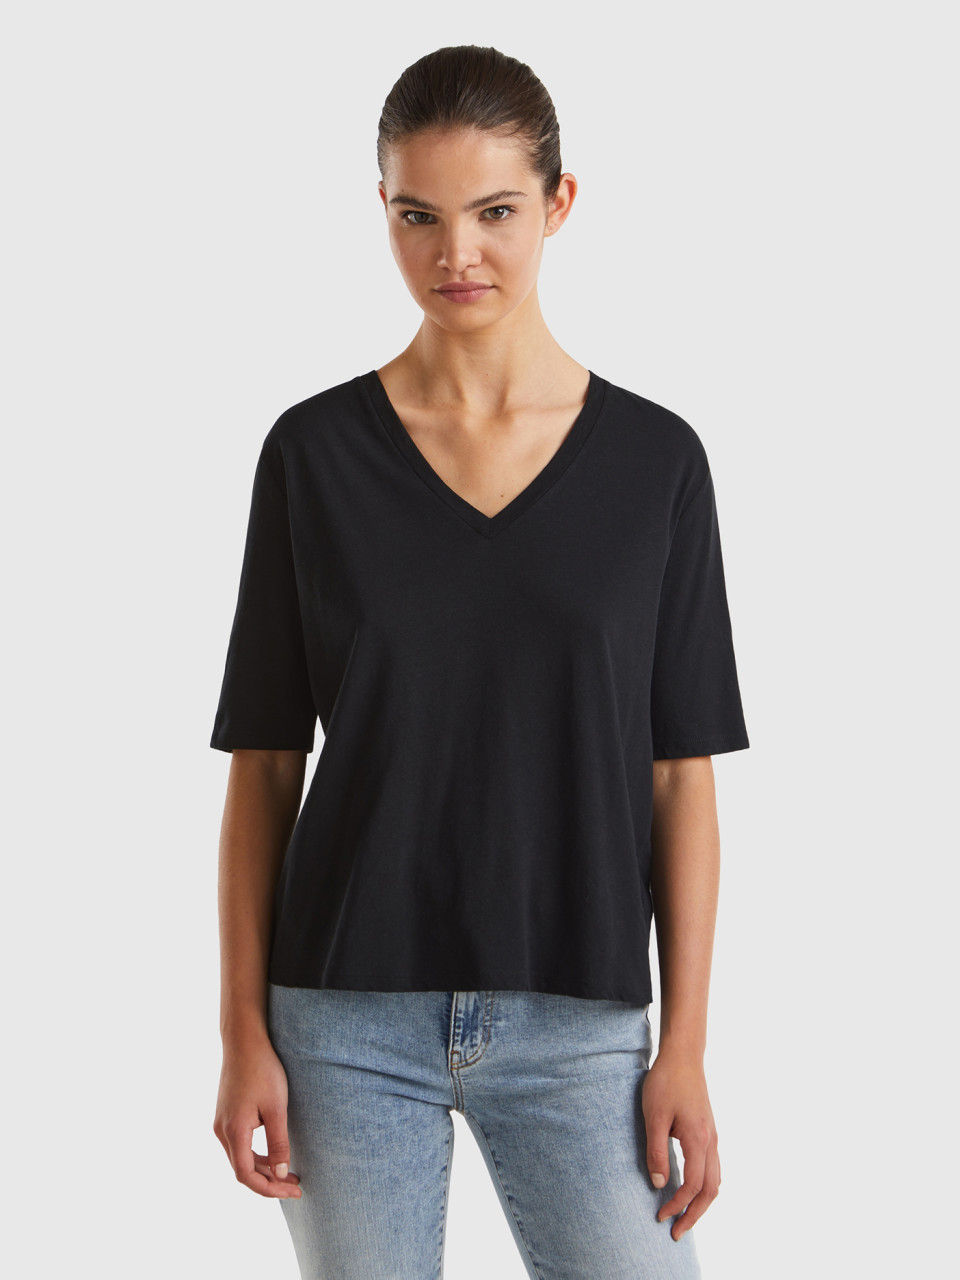 Benetton, T-shirt In Cotton And Linen Blend, Black, Women